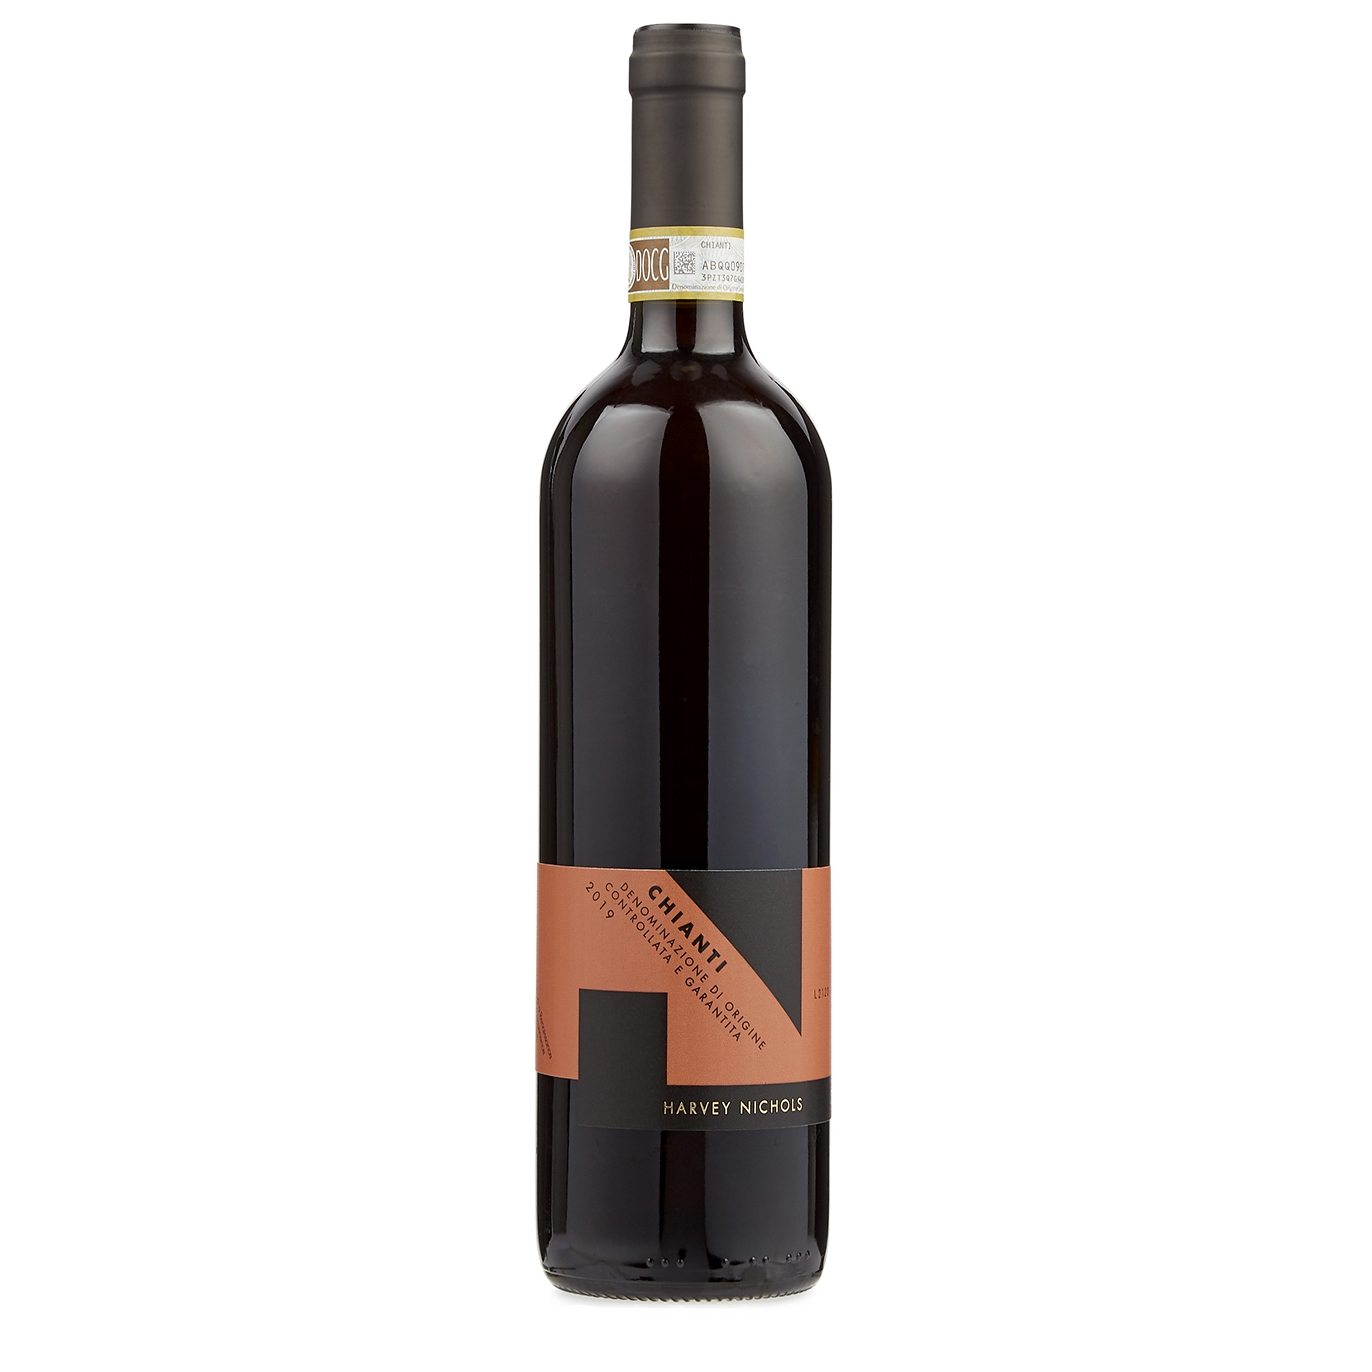 Harvey Nichols Chianti 2019 Red Wine